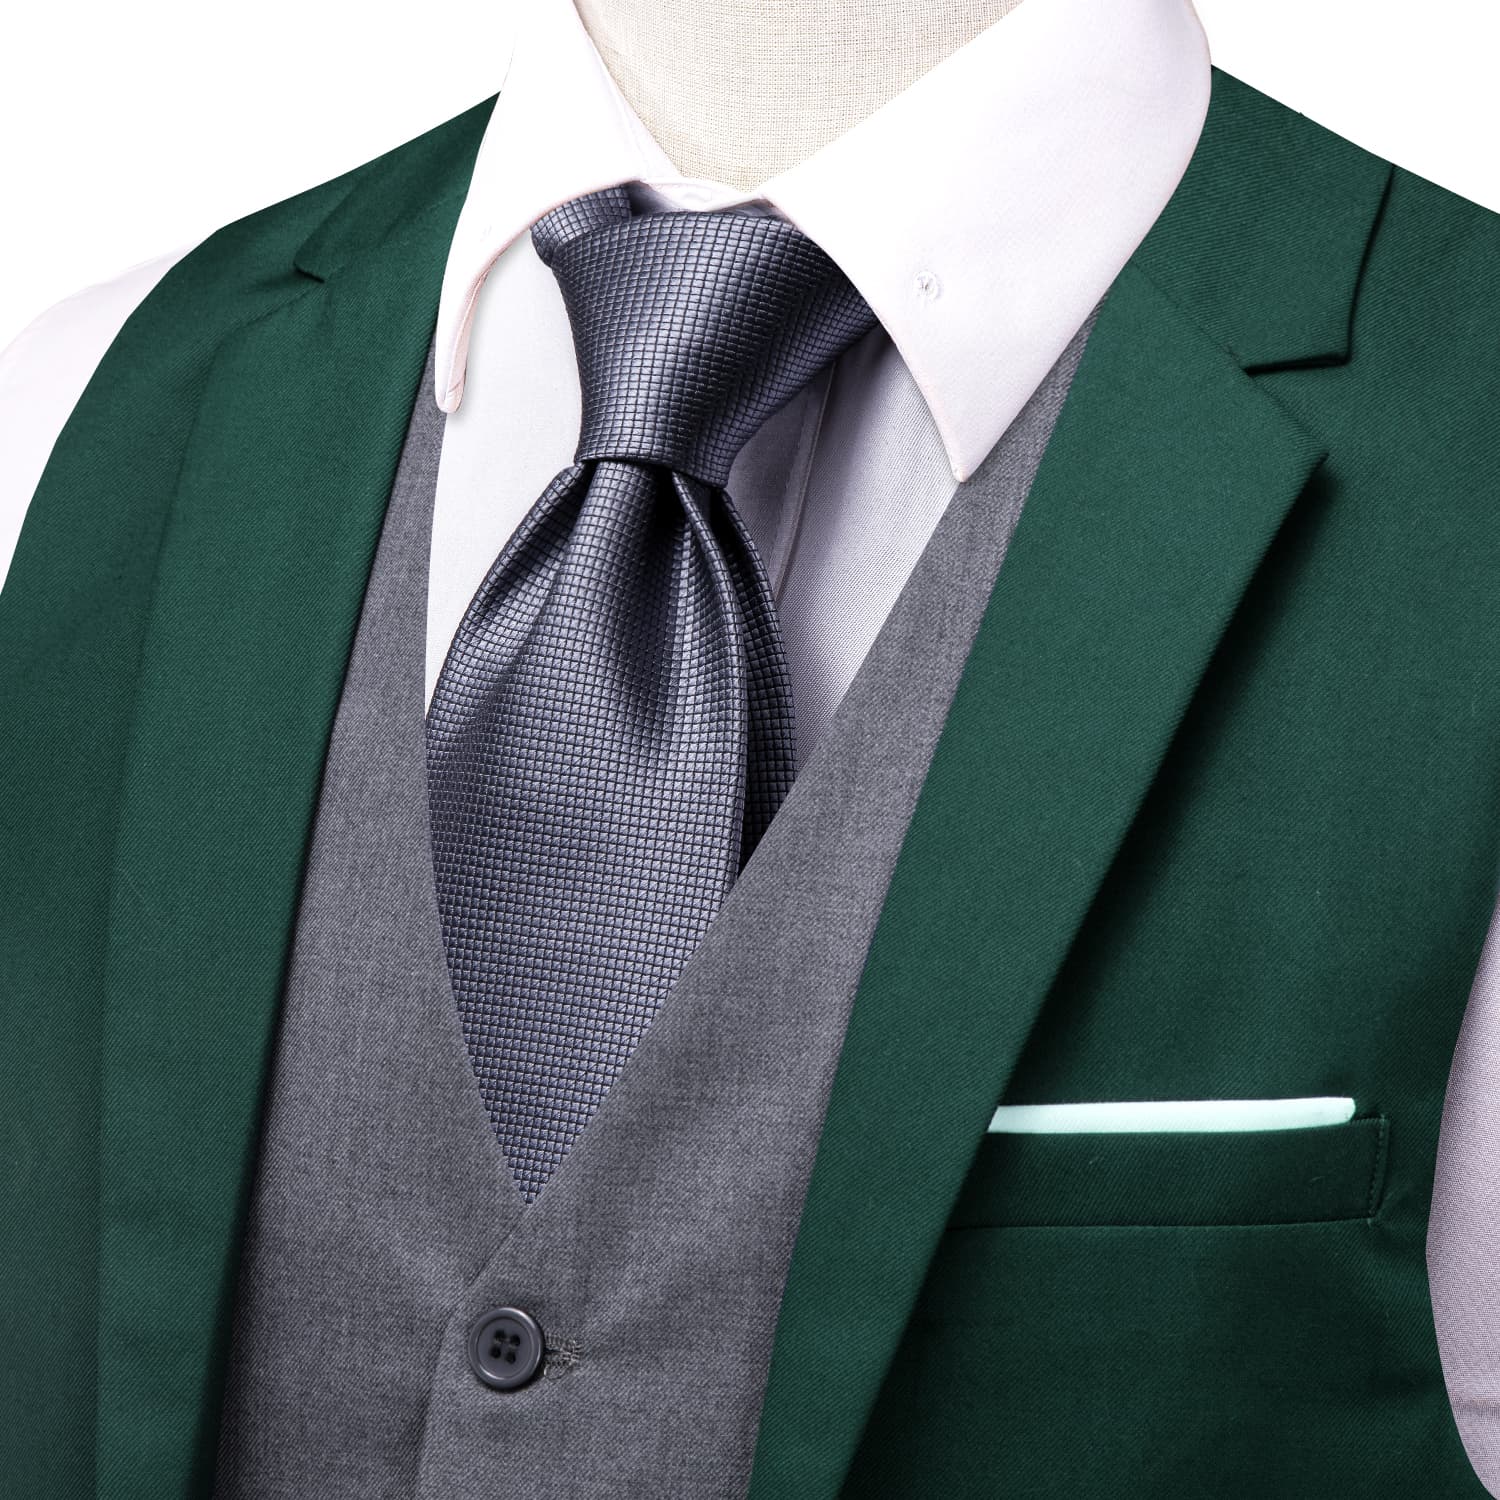 Hi-Tie Suit Vest Layered Waistcoat SeaGreen Gray Vests for Wedding